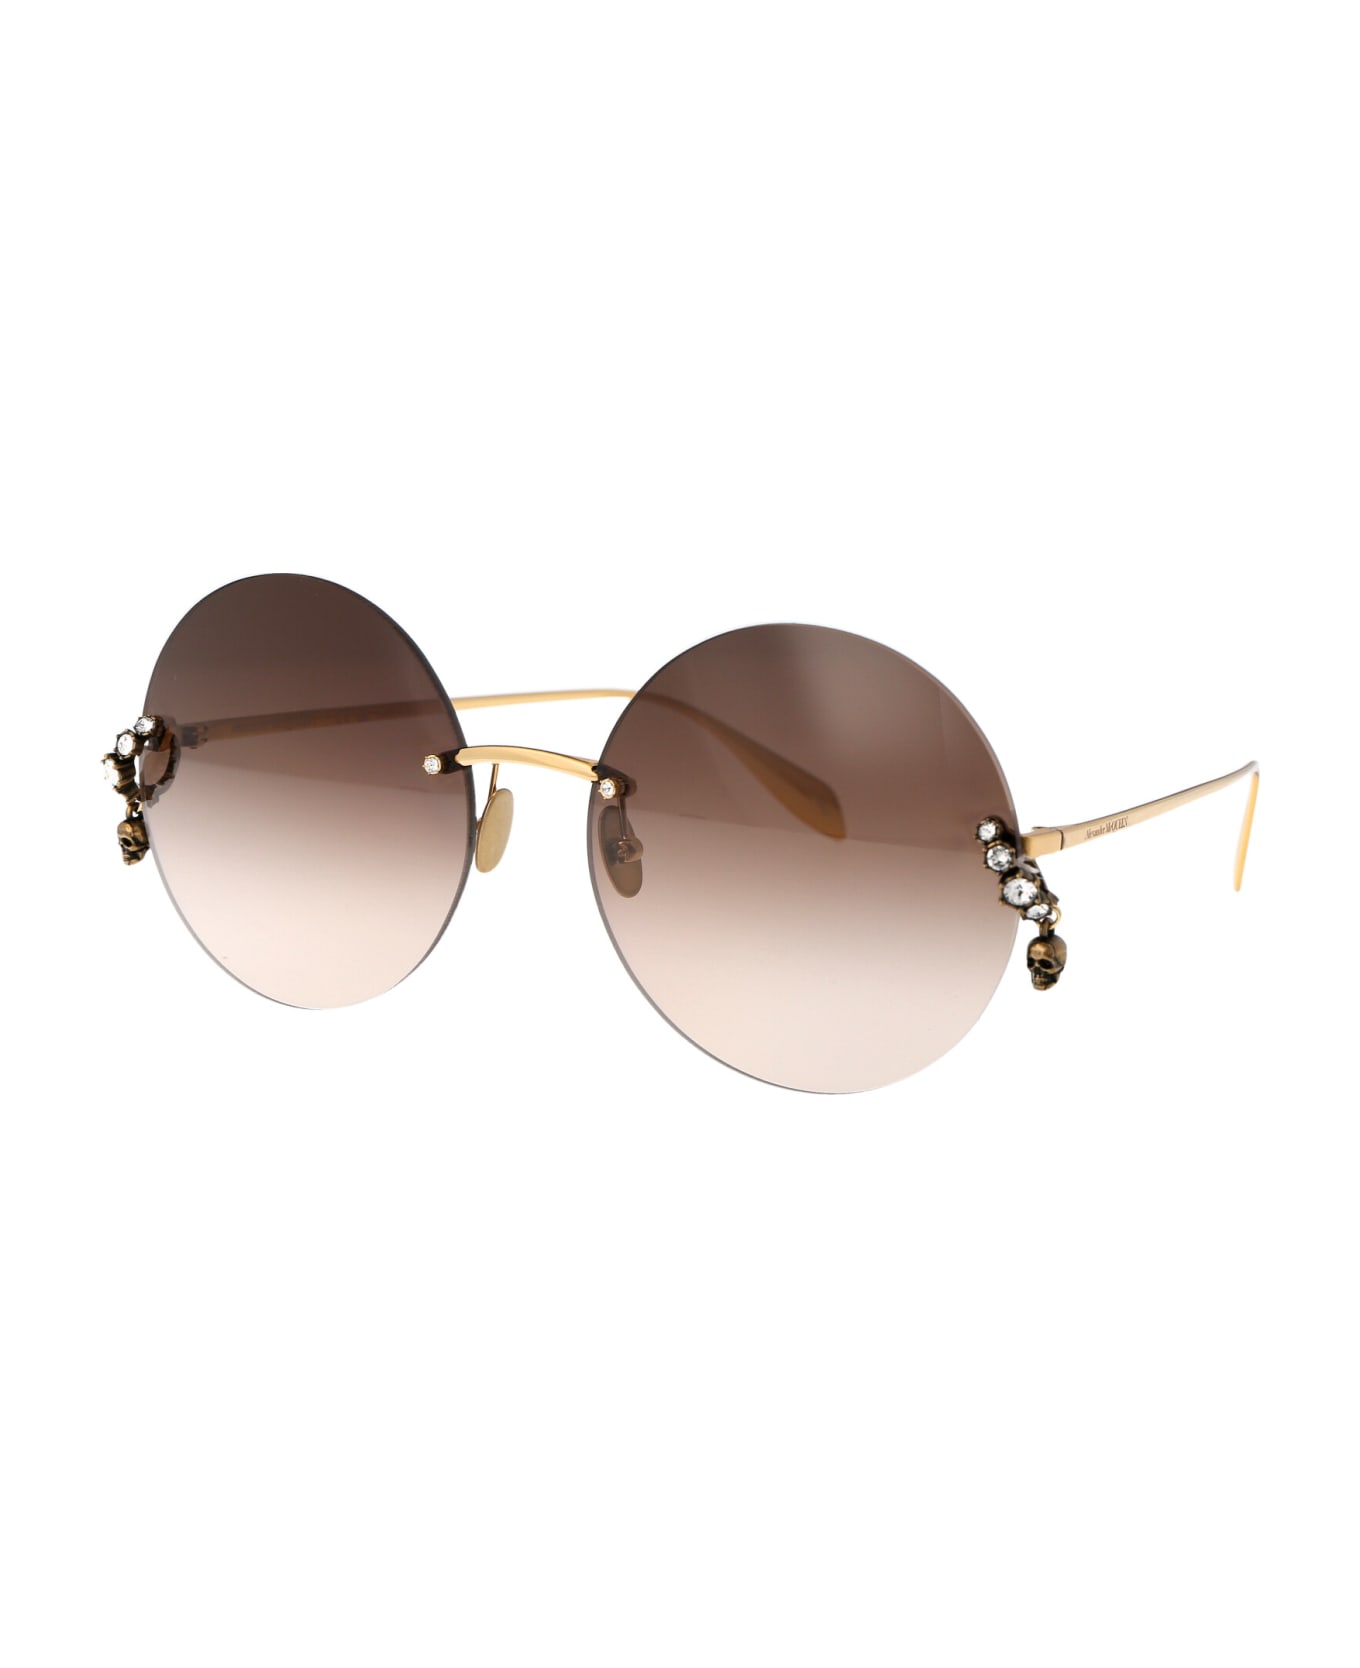 Alexander McQueen Eyewear Am0418s Sunglasses - 002 GOLD GOLD BROWN